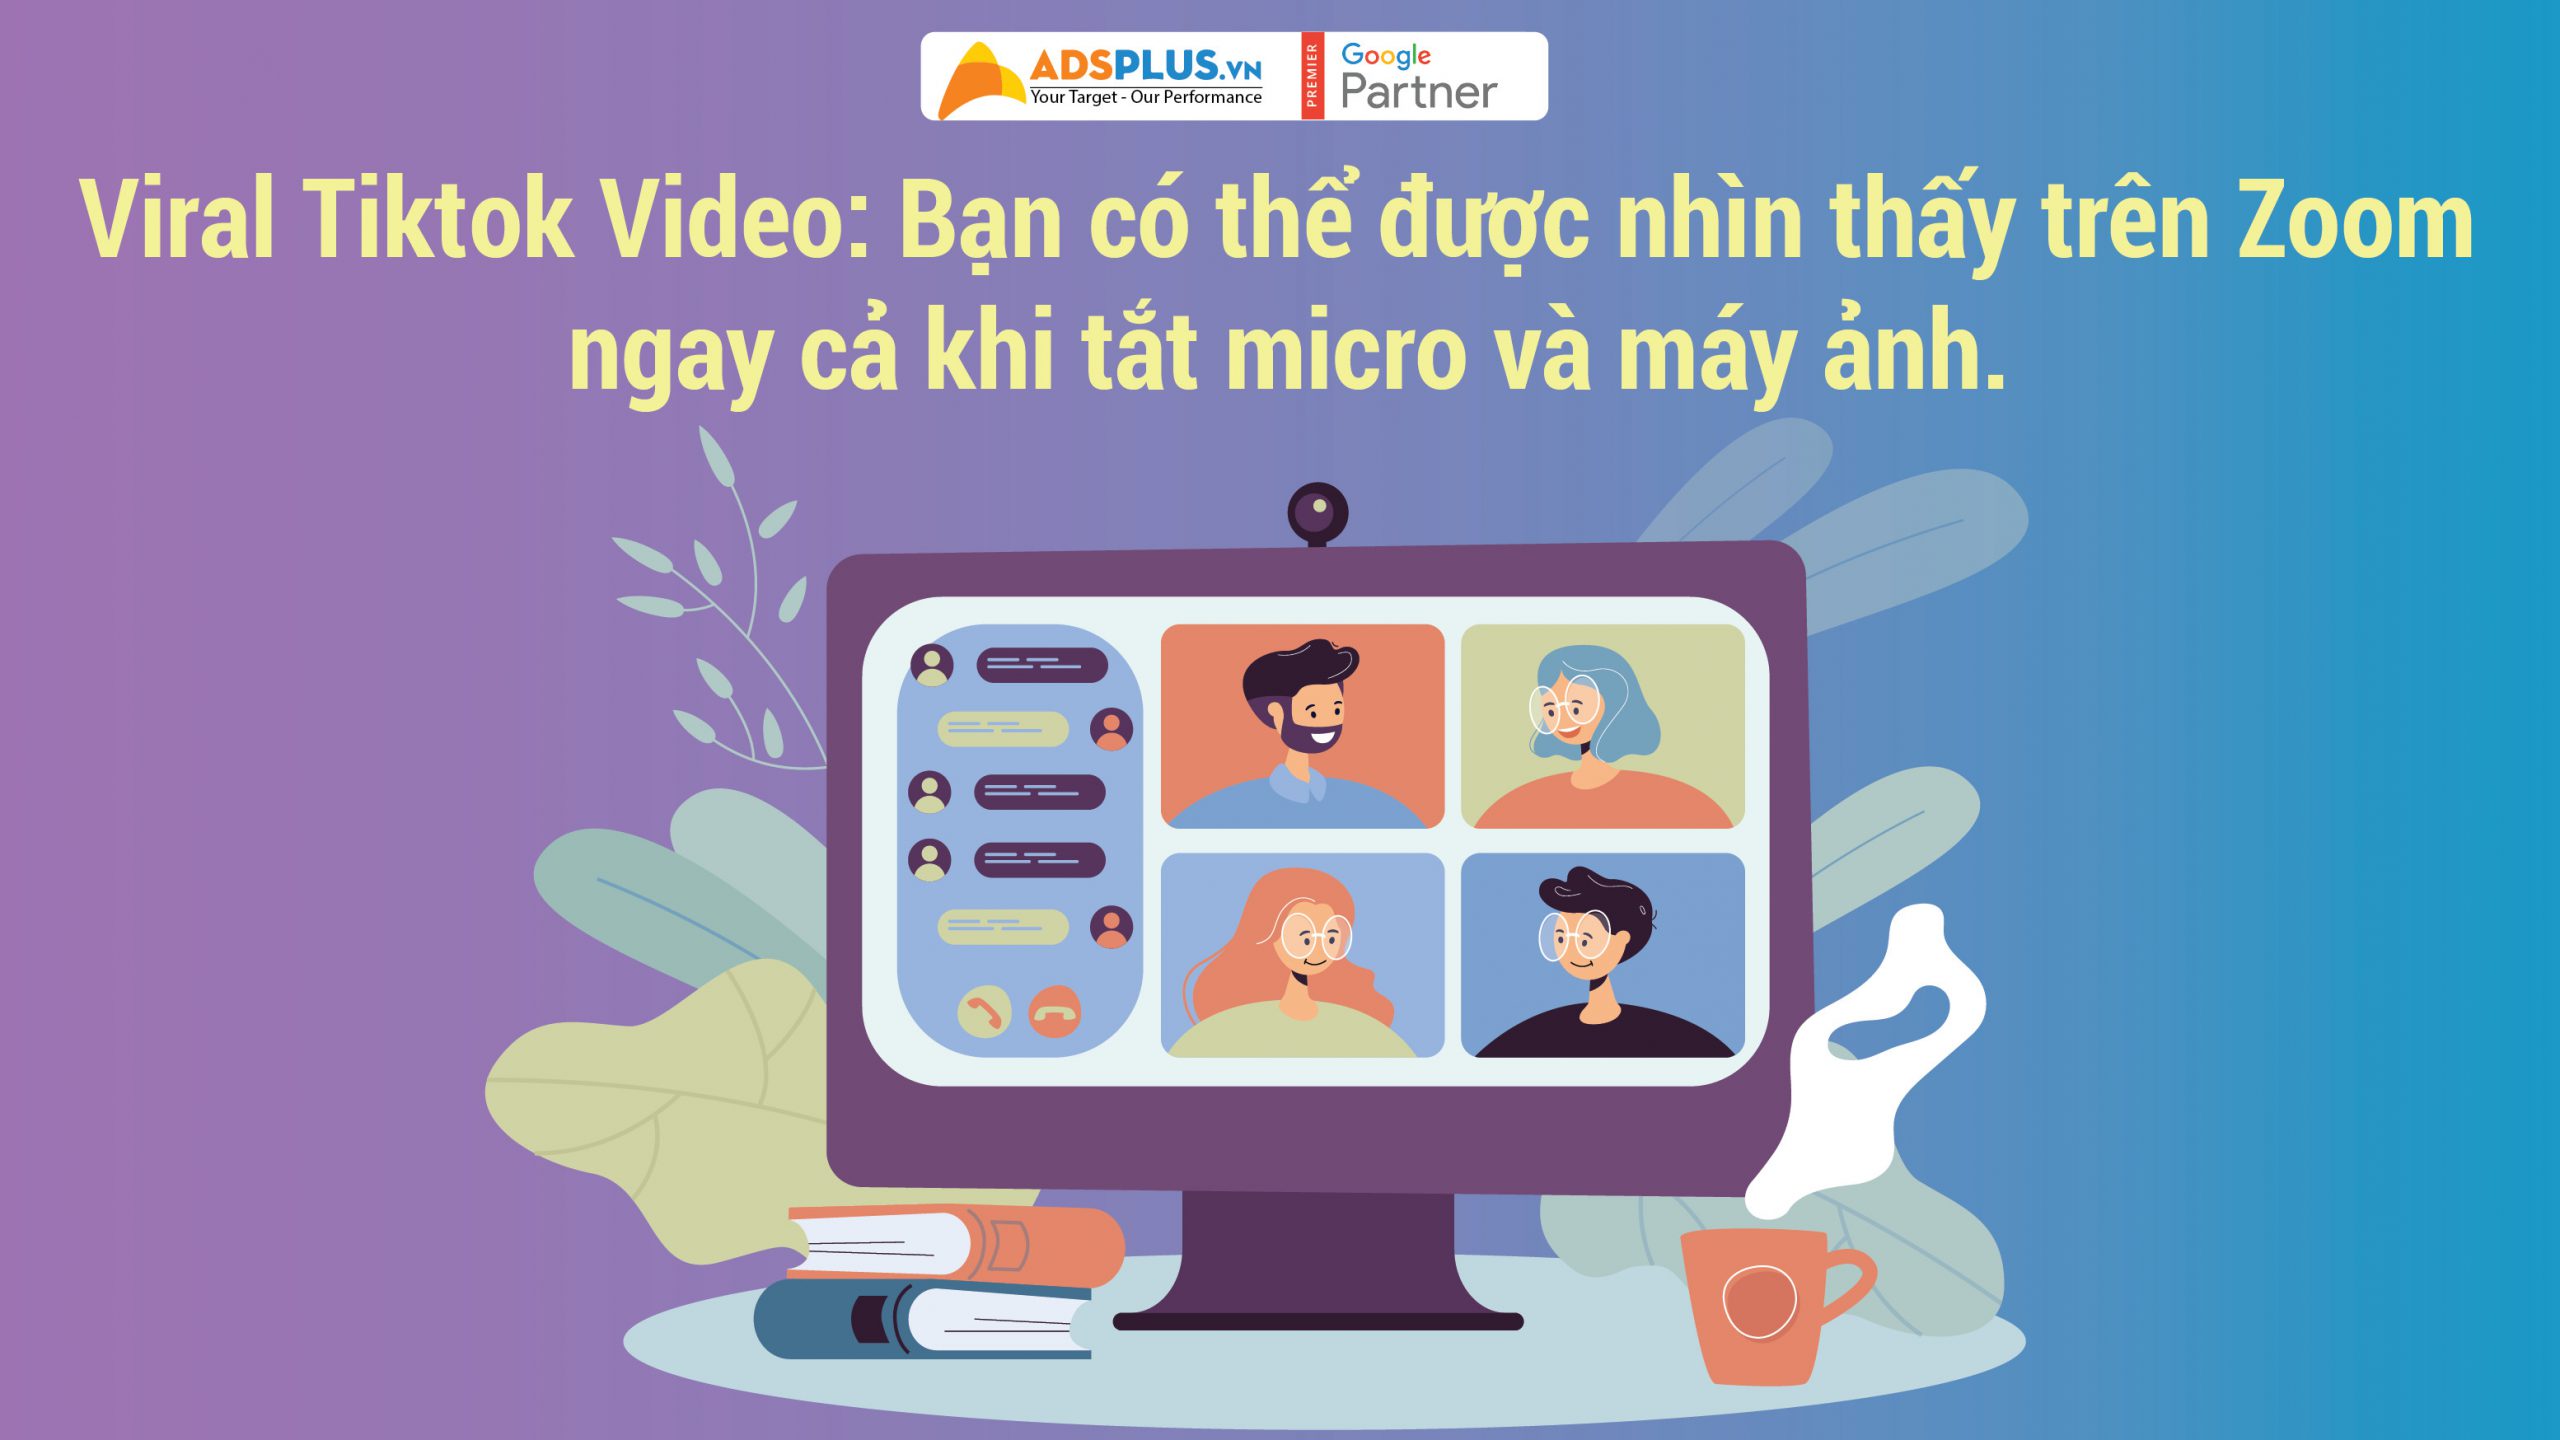 Viral Tiktok Video: Bạn có thể được nhìn thấy trên Zoom ngay cả khi tắt micro và máy ảnh.